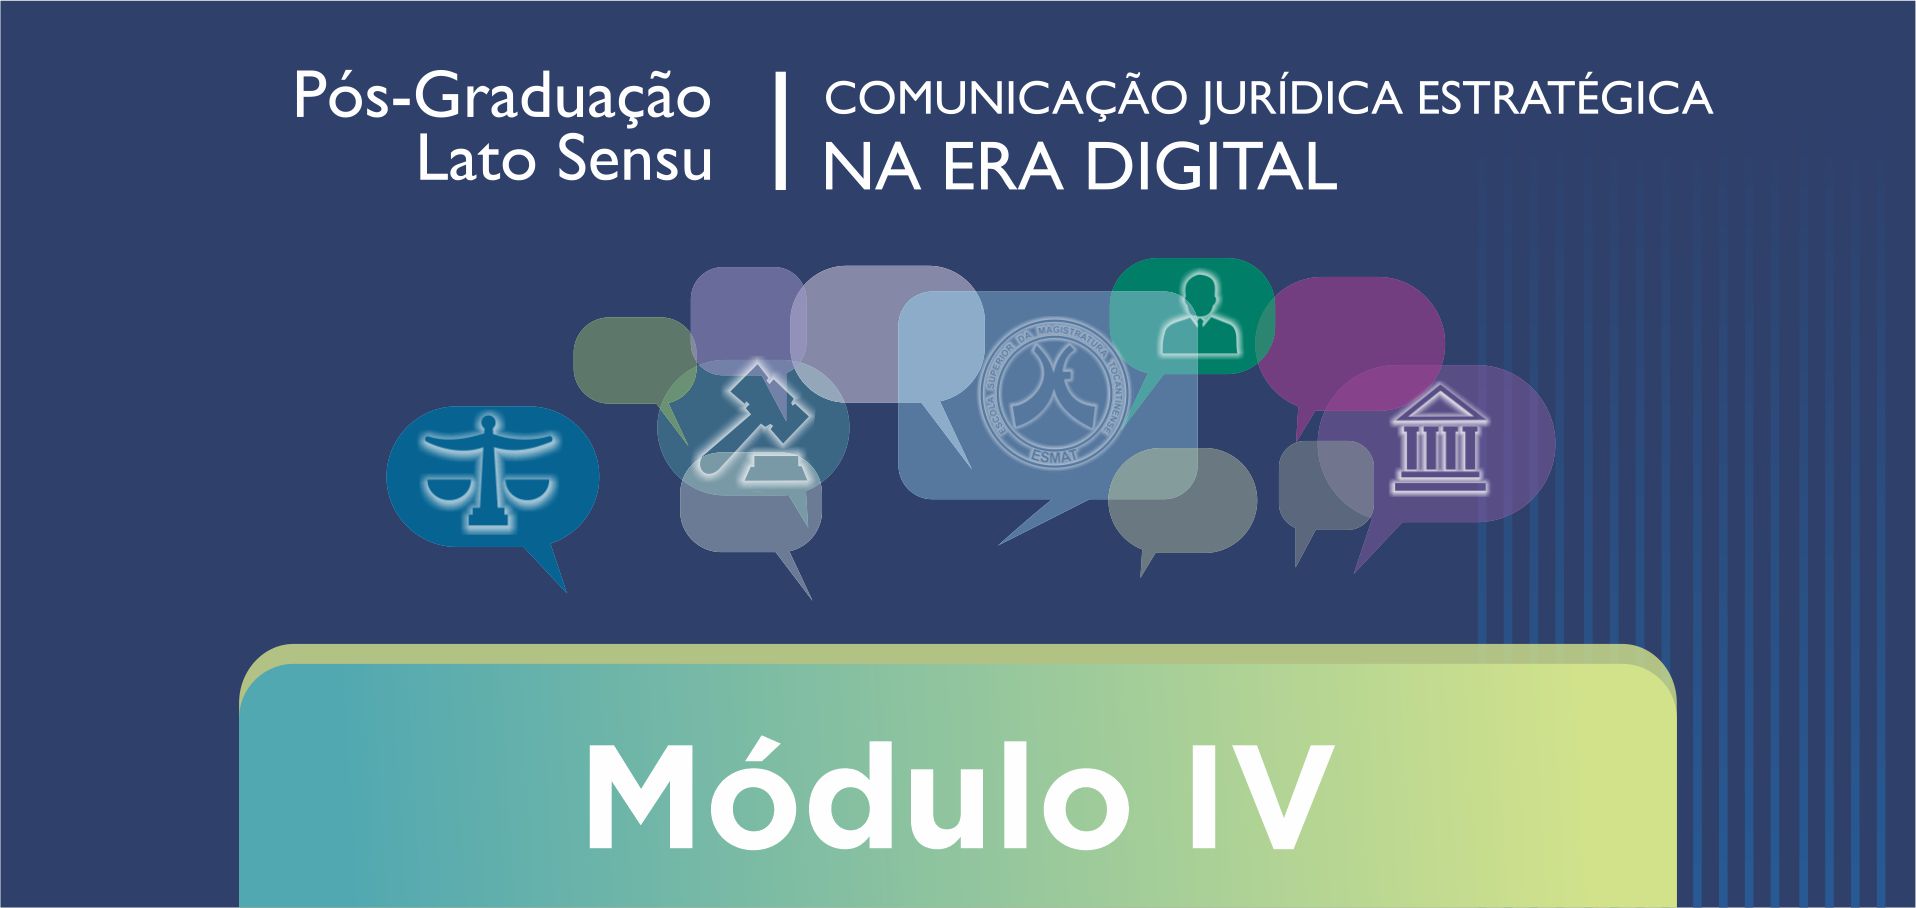 MÓDULO IV - Empreendedorismo, Inovação e Gestão de Projetos Ágeis em Comunicação Corporativa